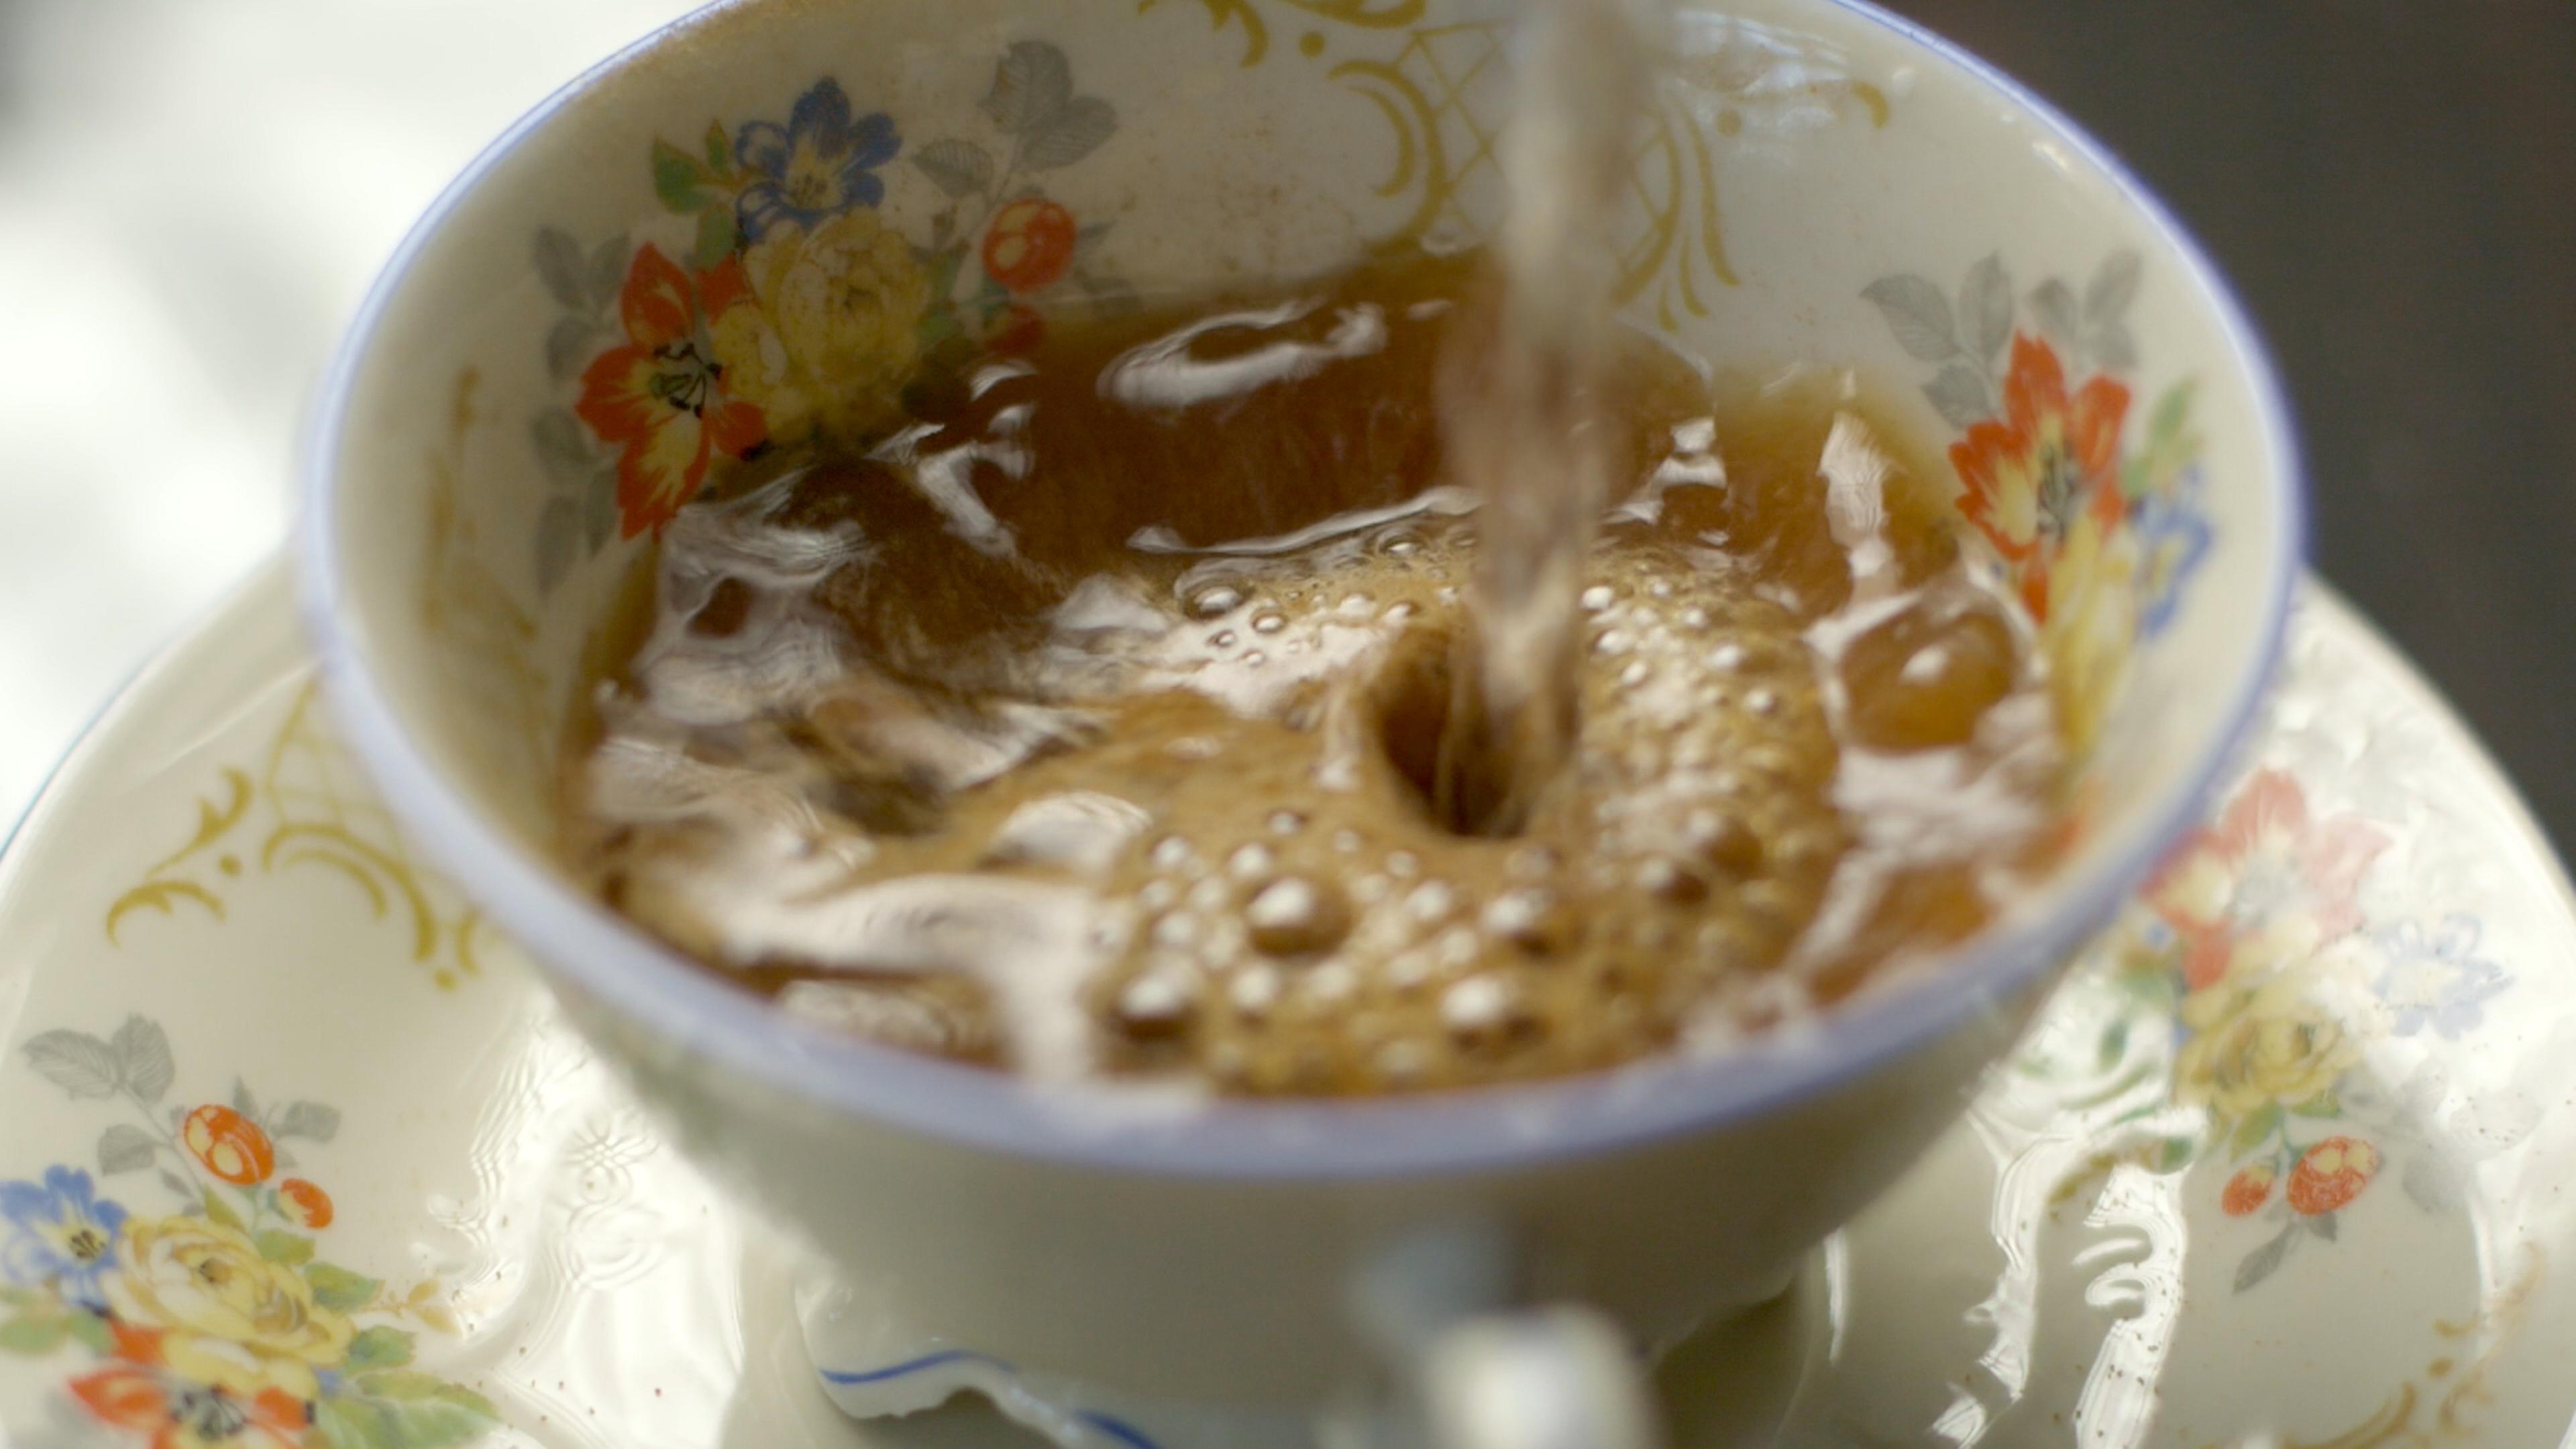 In eine alte Kaffeetasse mit Blümchenmuster wird auf Kaffeeersatzpulver Wasser gegossen.